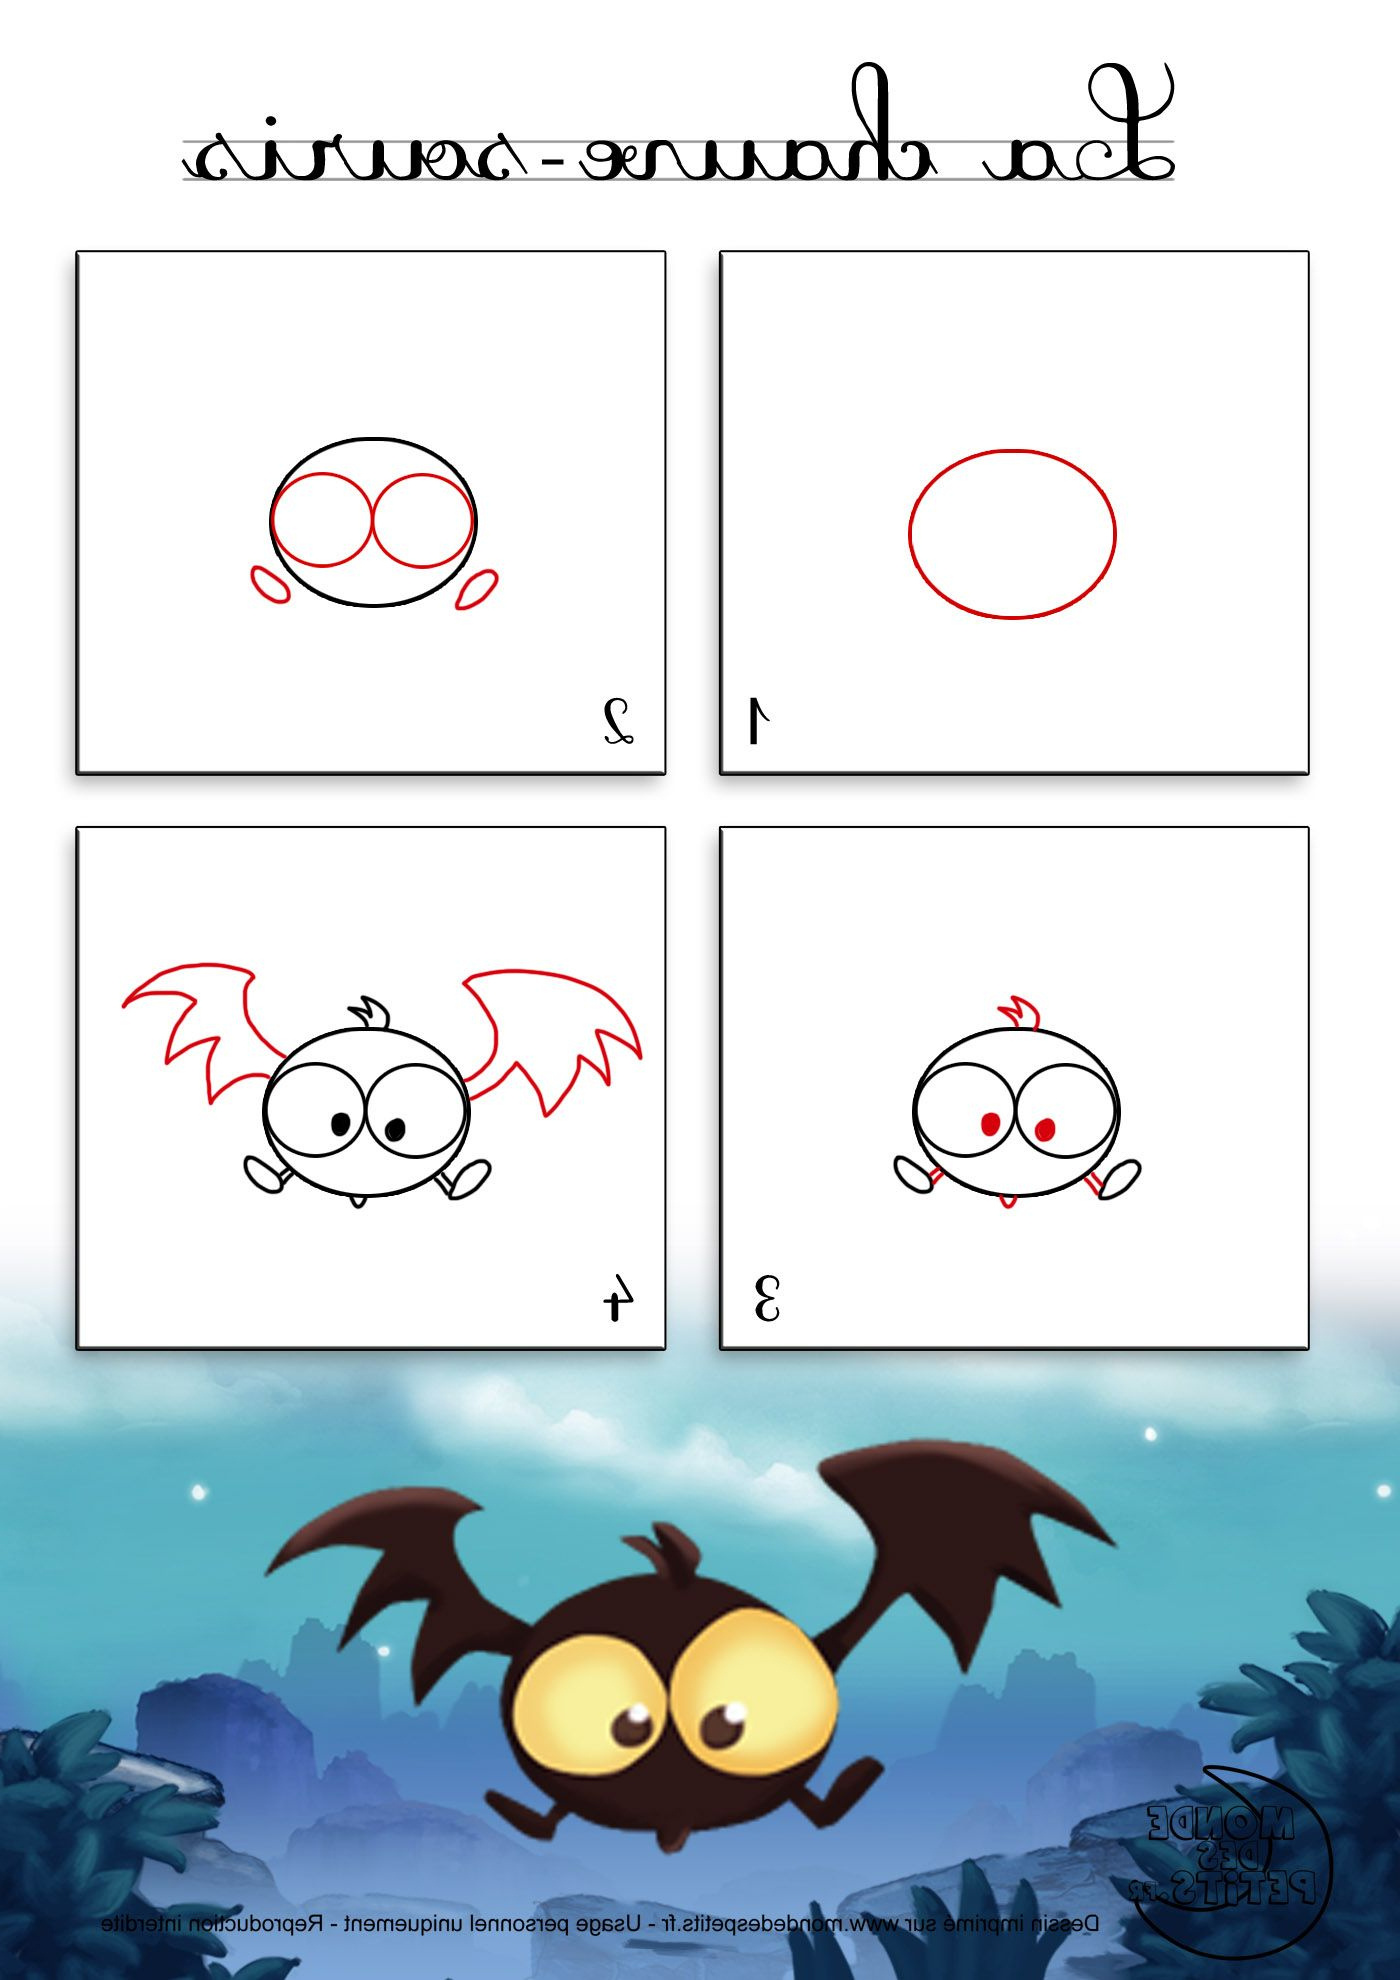 dessin1 ment dessiner une chauve souris dhalloween coloriage concernant dessin d halloween facile a dessiner